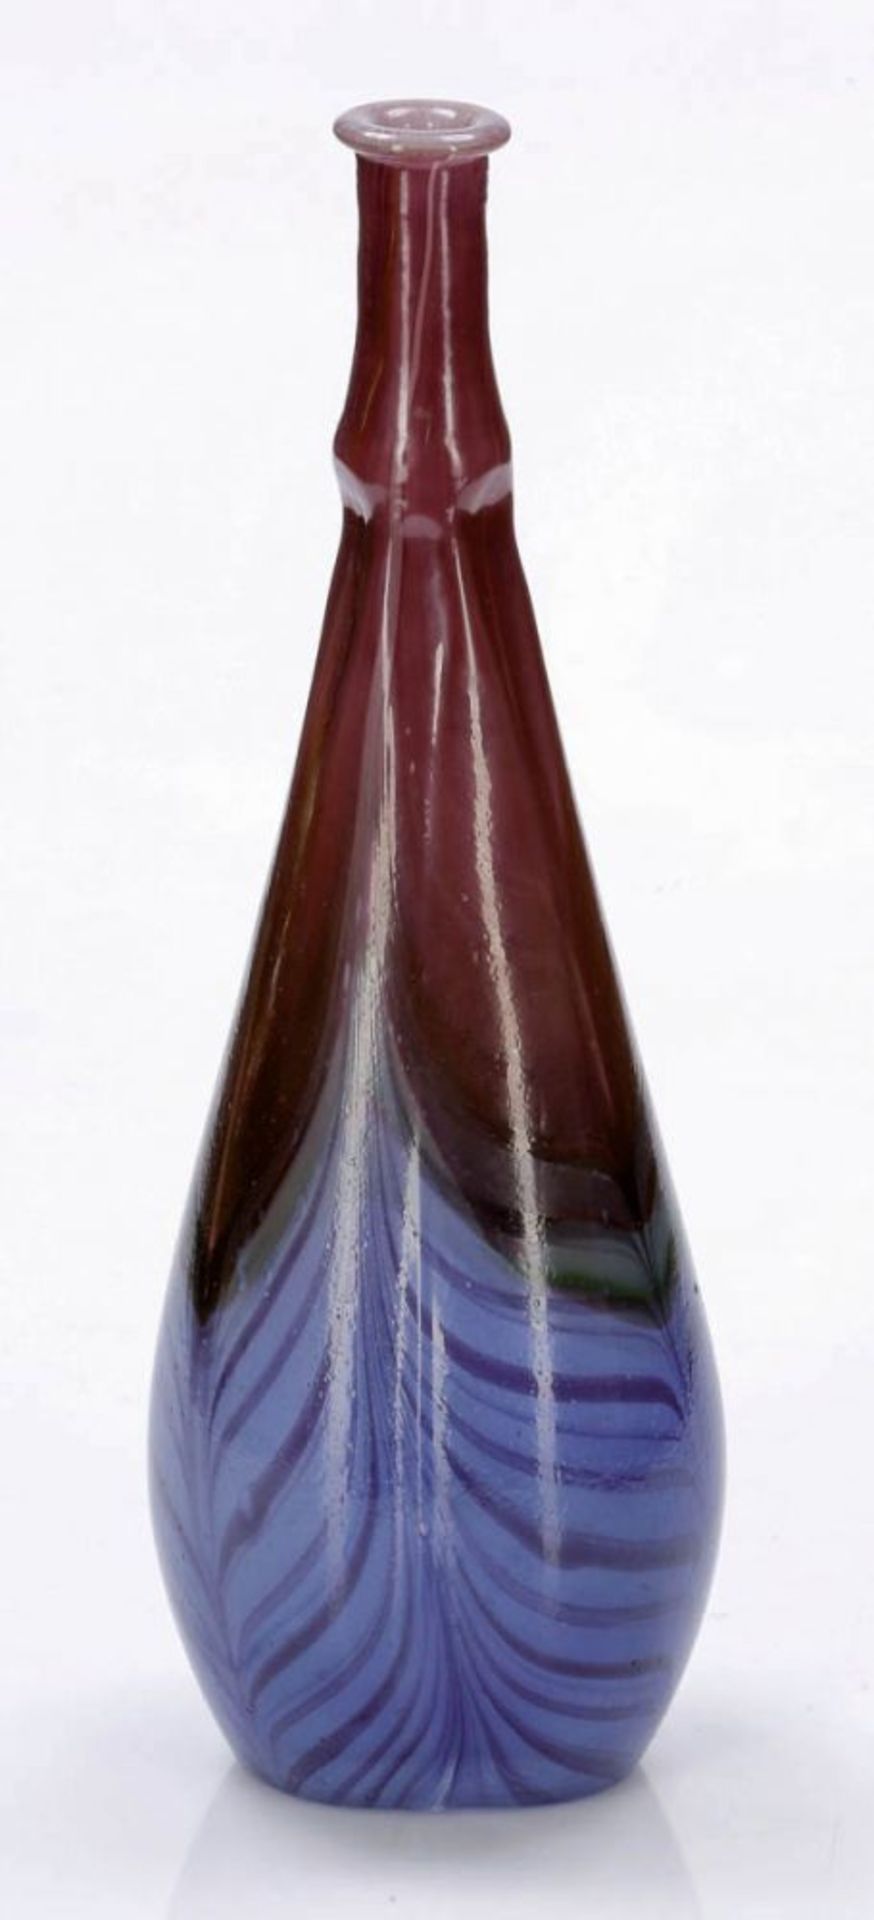 Enghalsvase Èmile Charles Gallé, Nancy um 1905. Farbloses Glas mit opakweißem Innenüberfang. In